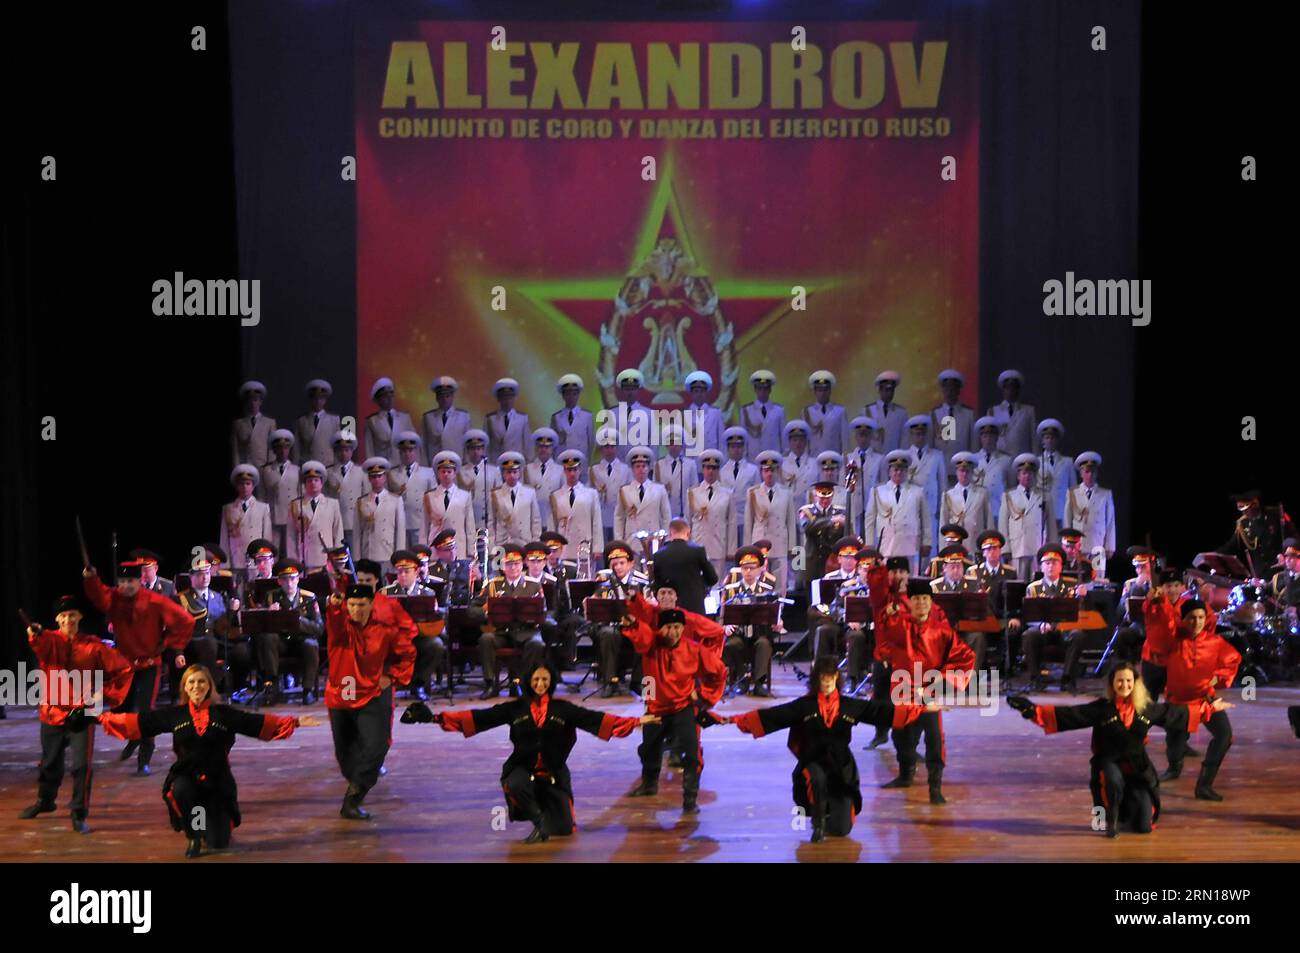 Mitglieder des Akademischen Ensemble für Gesang und Tanz Alexandrow von der russischen Armee treten am 6. Dezember 2014 in der Avellaneda-Halle des Nationaltheaters in Havanna, der Hauptstadt Kubas, auf. Joaquin Hernandez) (azp) KUBA-HAVANNA-RUSSLAND-KULTUR-SHOW e Joaquin PUBLICATIONxNOTxINxCHN Mitglieder des Akademischen Song- und Tanzensembles Alexandrov der russischen Armee treten während einer Show in der avellaneda Hall des Nationaltheaters in Havanna Hauptstadt Kubas AM 6. Dezember 2014 AUF Joaquin Hernandez EGP Kuba Havanna Russia Culture Show e Joataquin PUCHTICxTICINNICXTICN Stockfoto